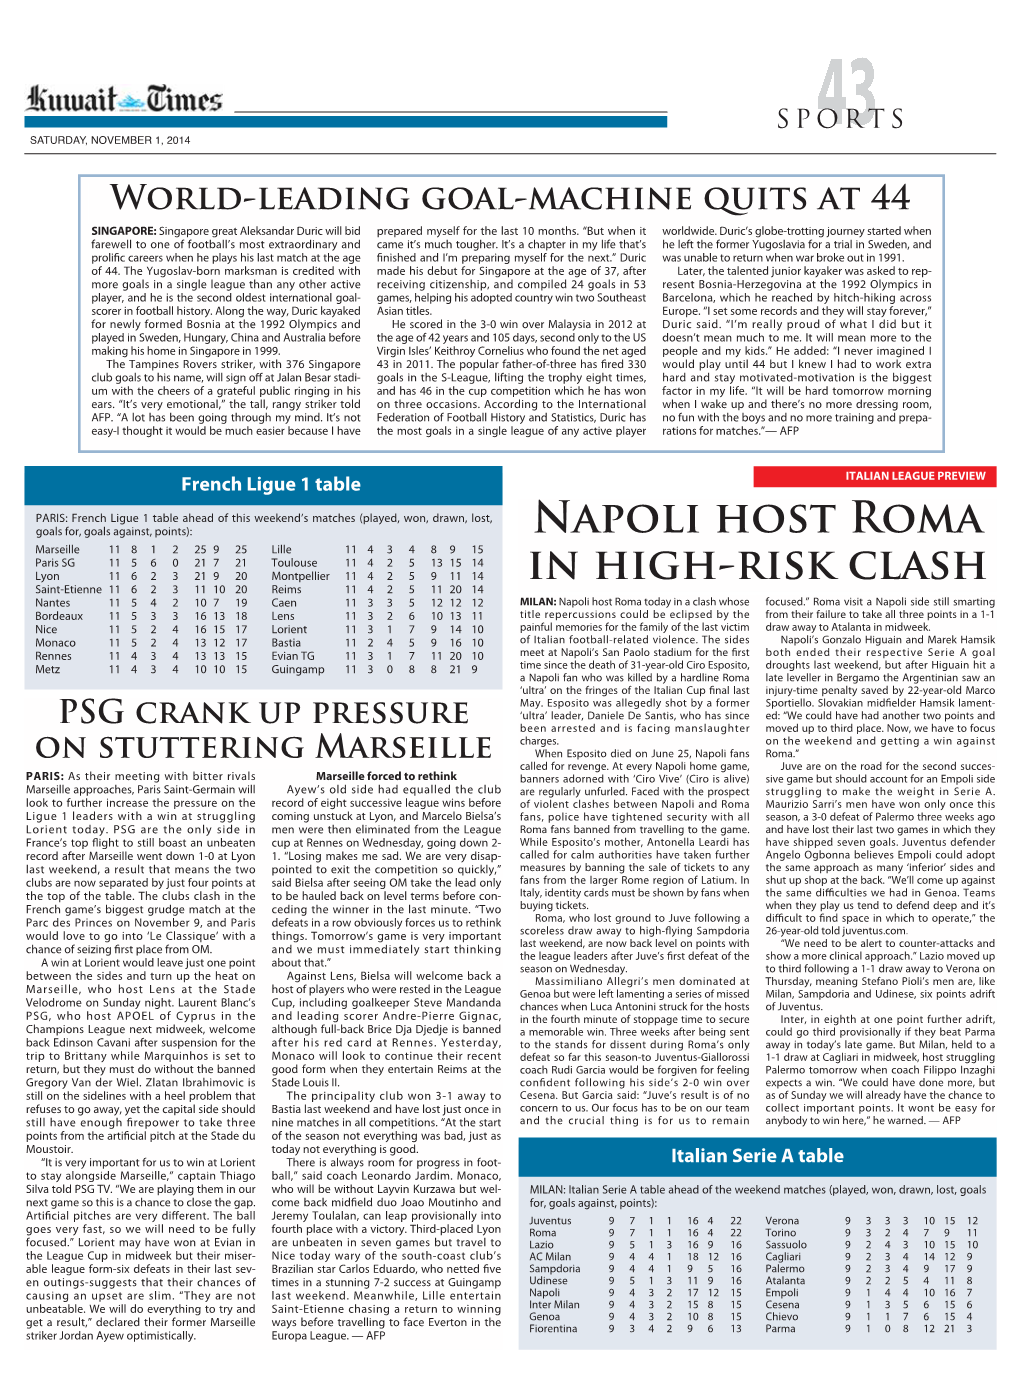 Napoli Host Roma in High-Risk Clash